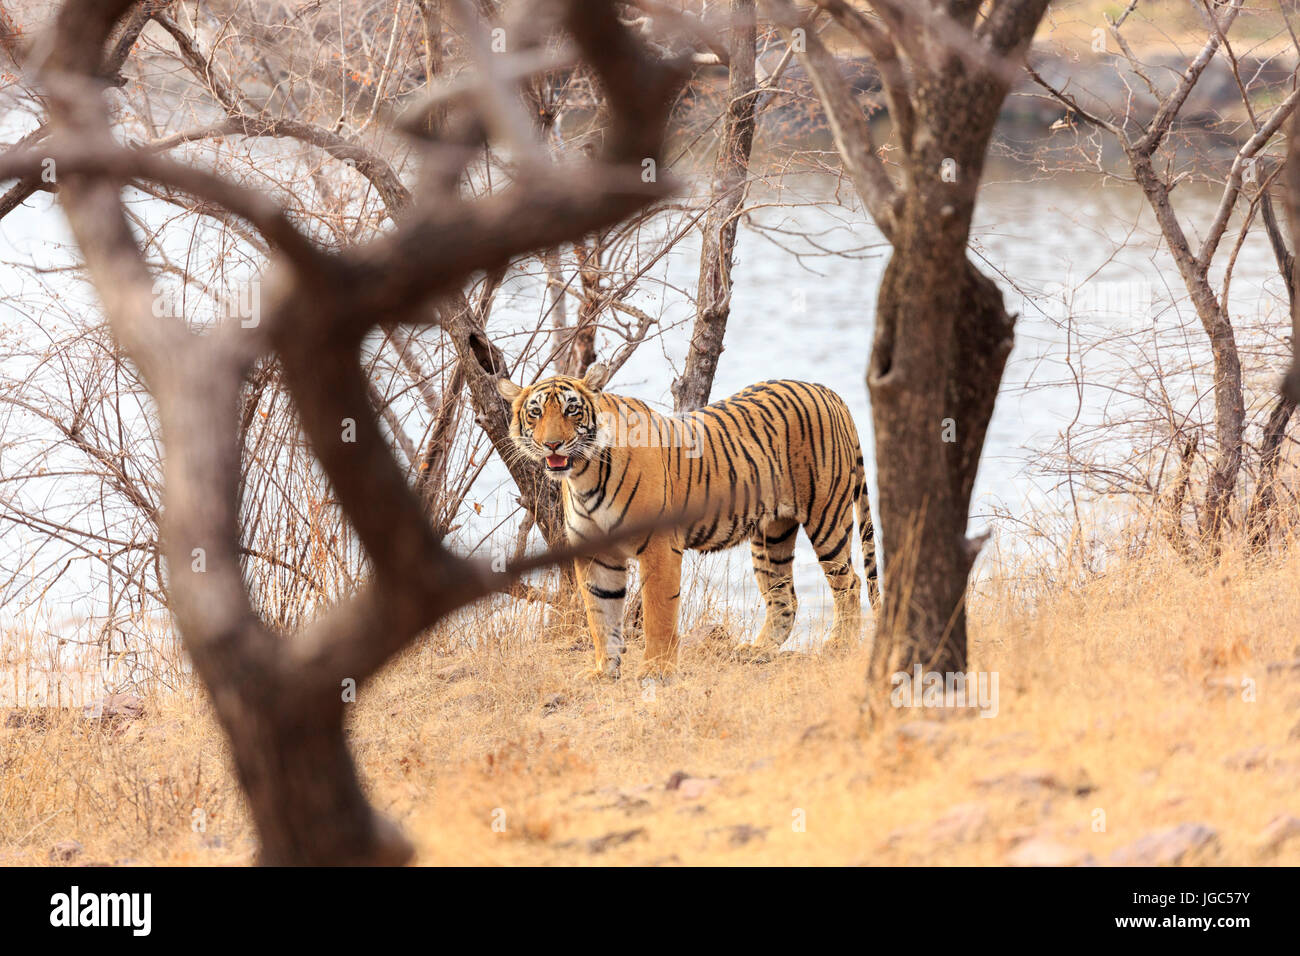 Tiger, Ranthambhore Tiger Reserve, Rajasthan, India Stock Photo